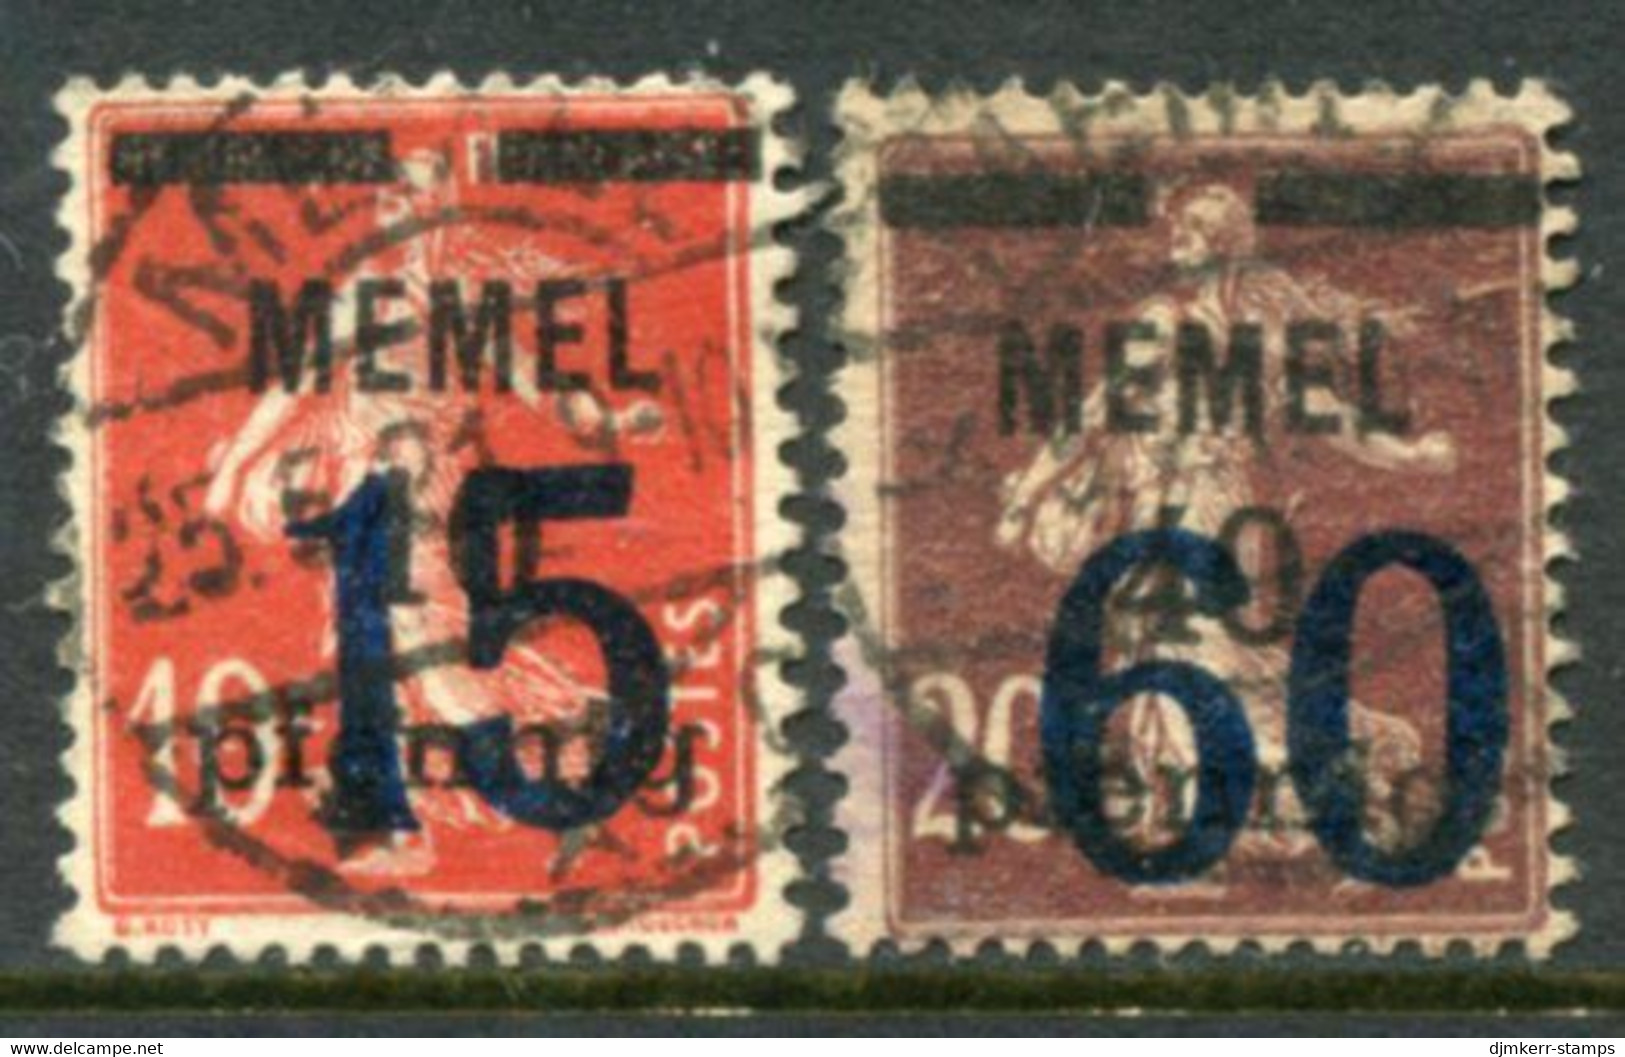 MEMEL 1921  Overprints 15 And 60 Used. Stonischken. Michel 34-35 - Klaipeda 1923